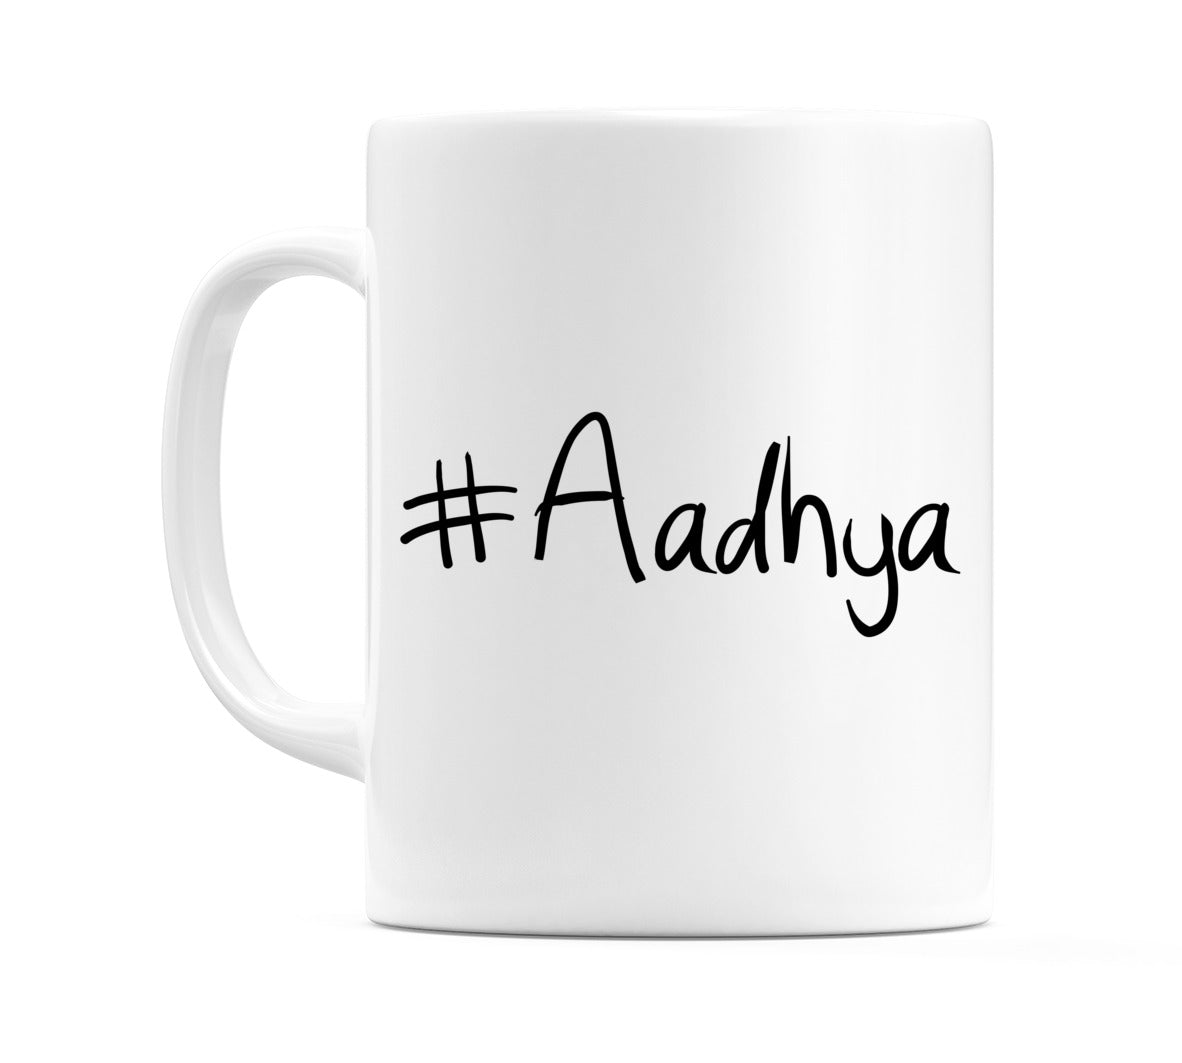 #Aadhya Mug